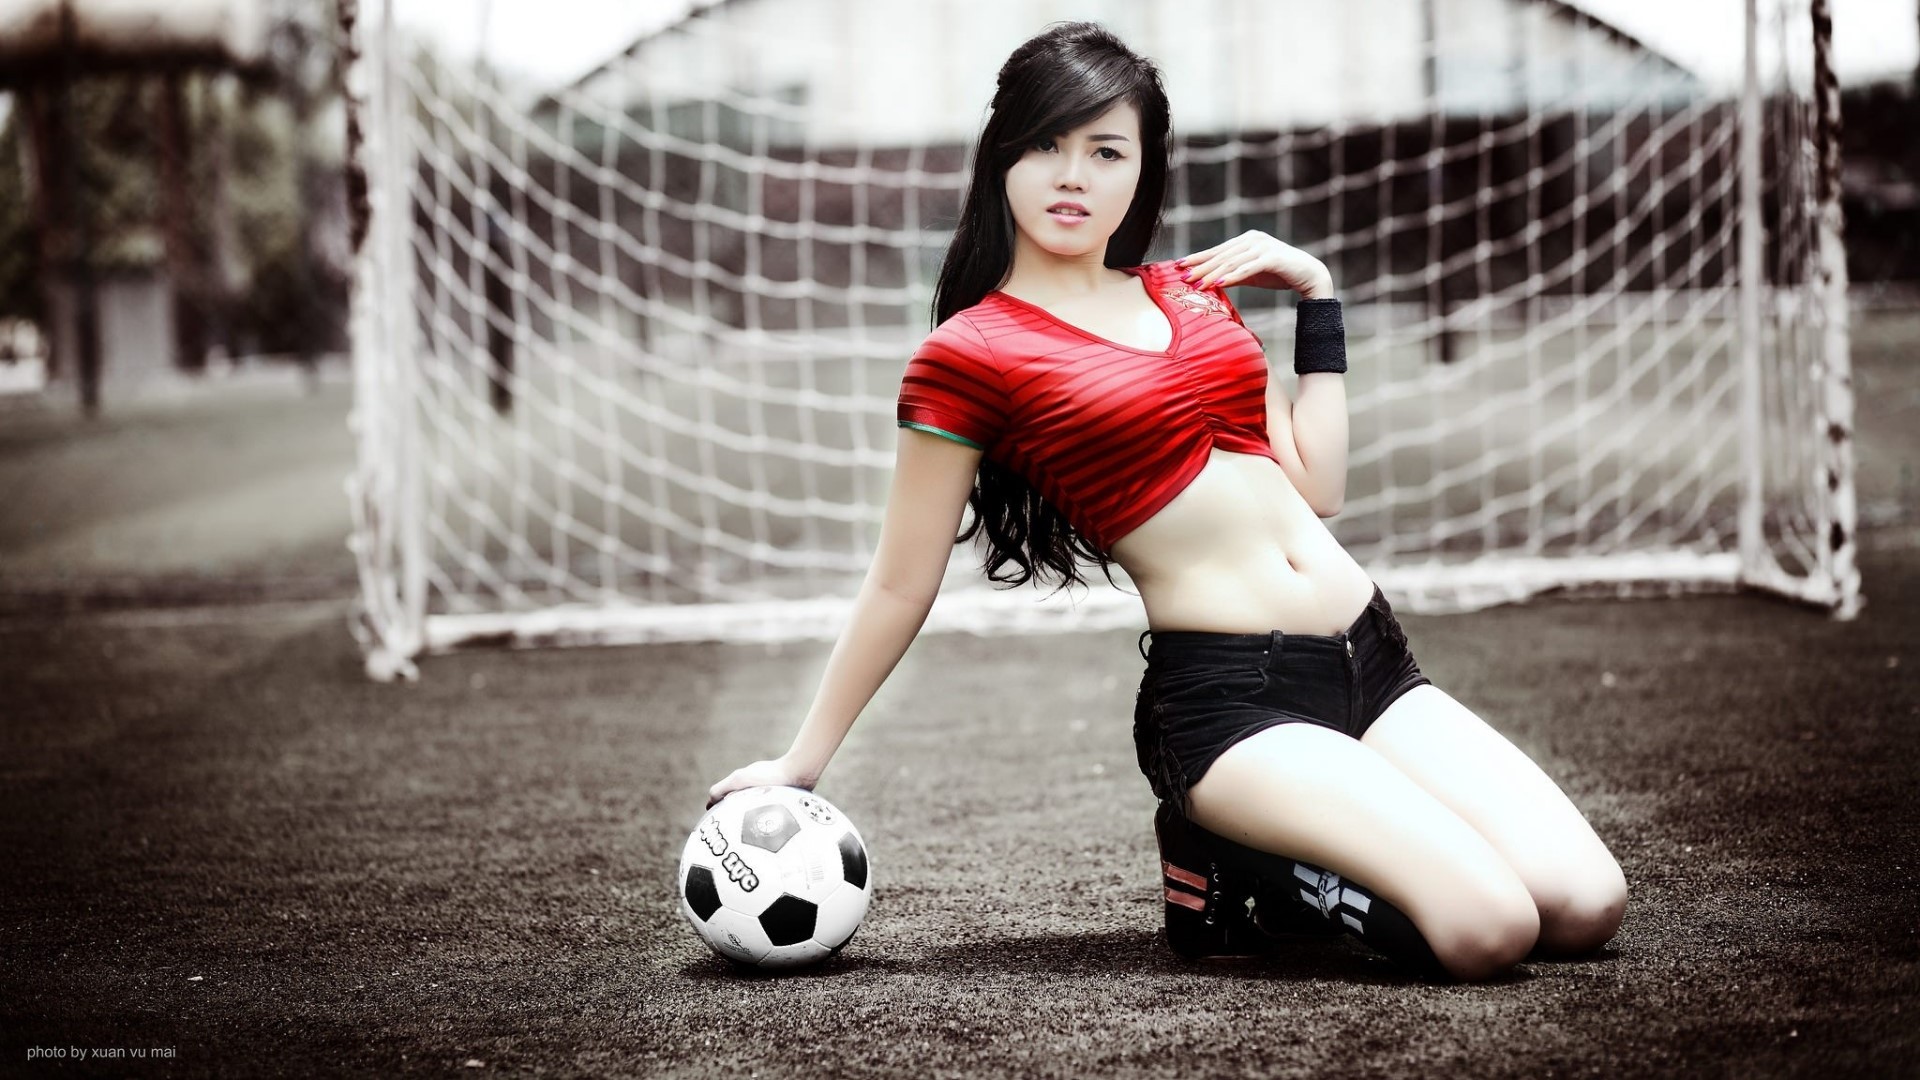 Soccer Balls Asian Women Model Soccer Girls 1920x1080